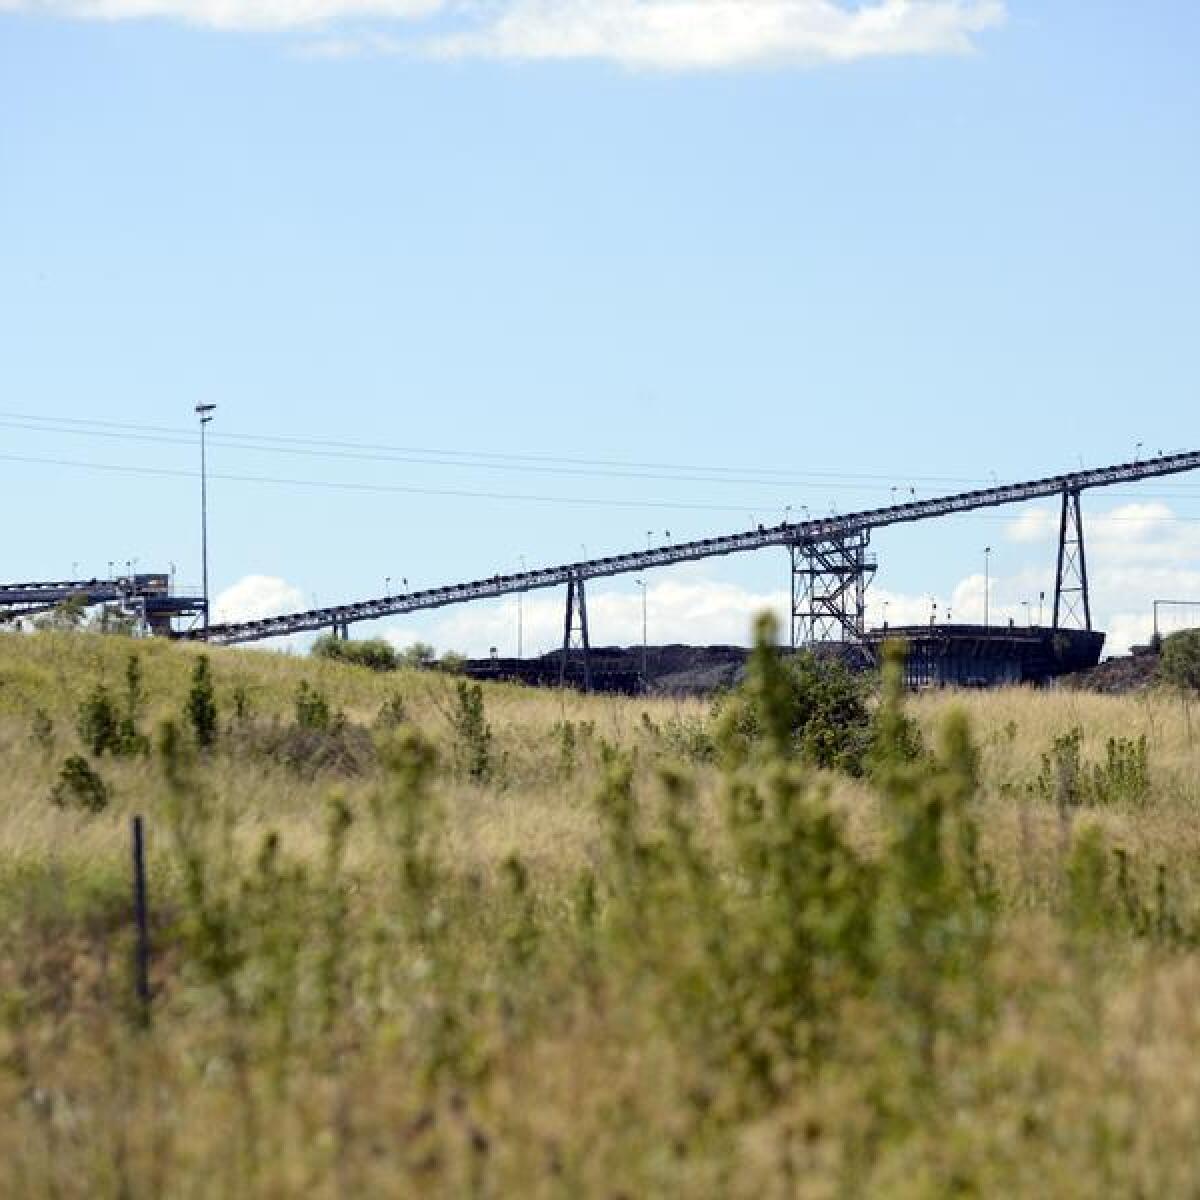 The New Acland coalmine in northwest Toowoomba.